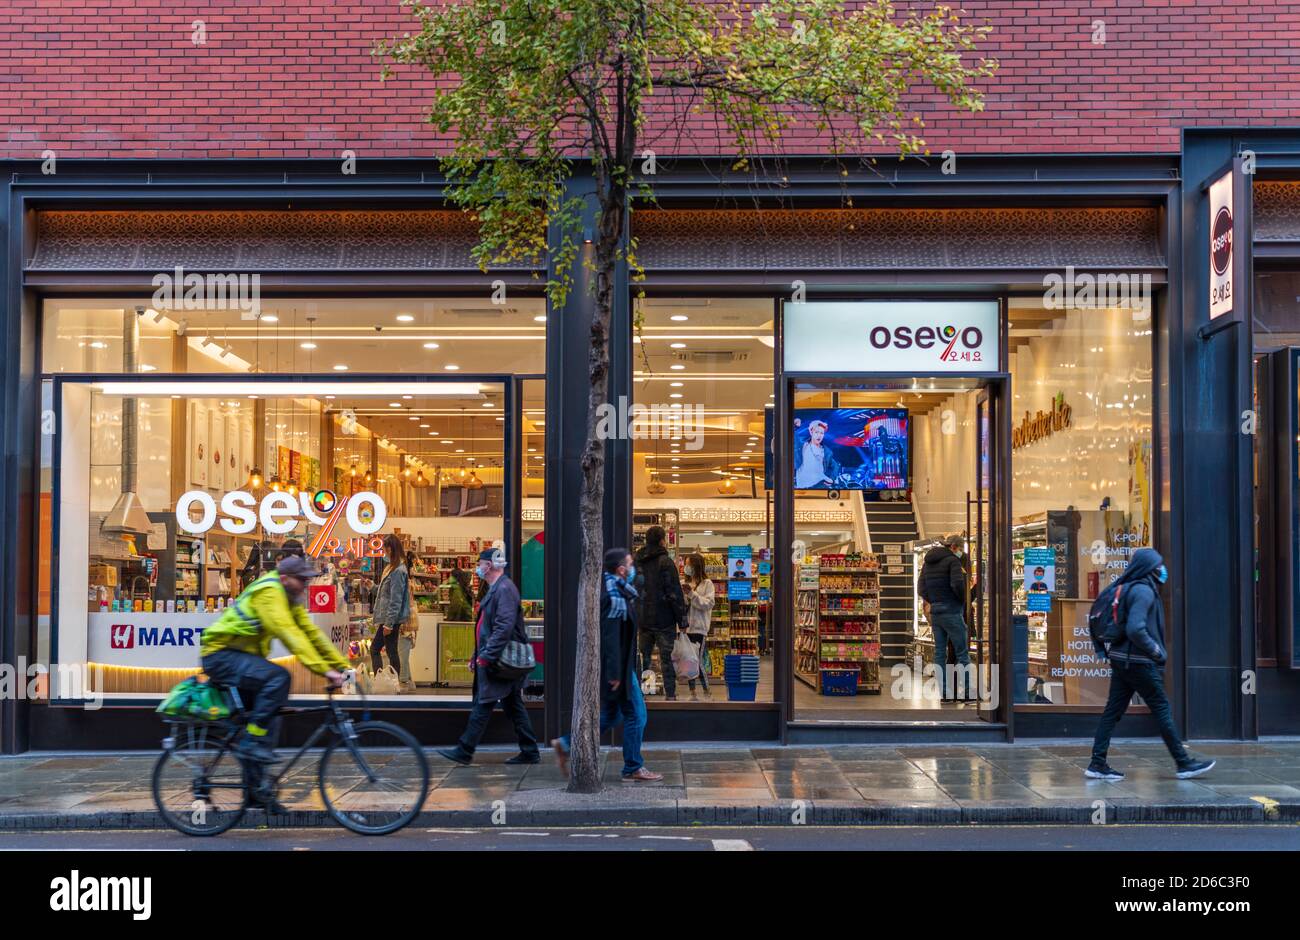 Oseyo Soho London - Oseyo Store Charing Cross Rd, hub coreano di cibo e cultura. Oseyo è il più grande rivenditore coreano del Regno Unito. Foto Stock